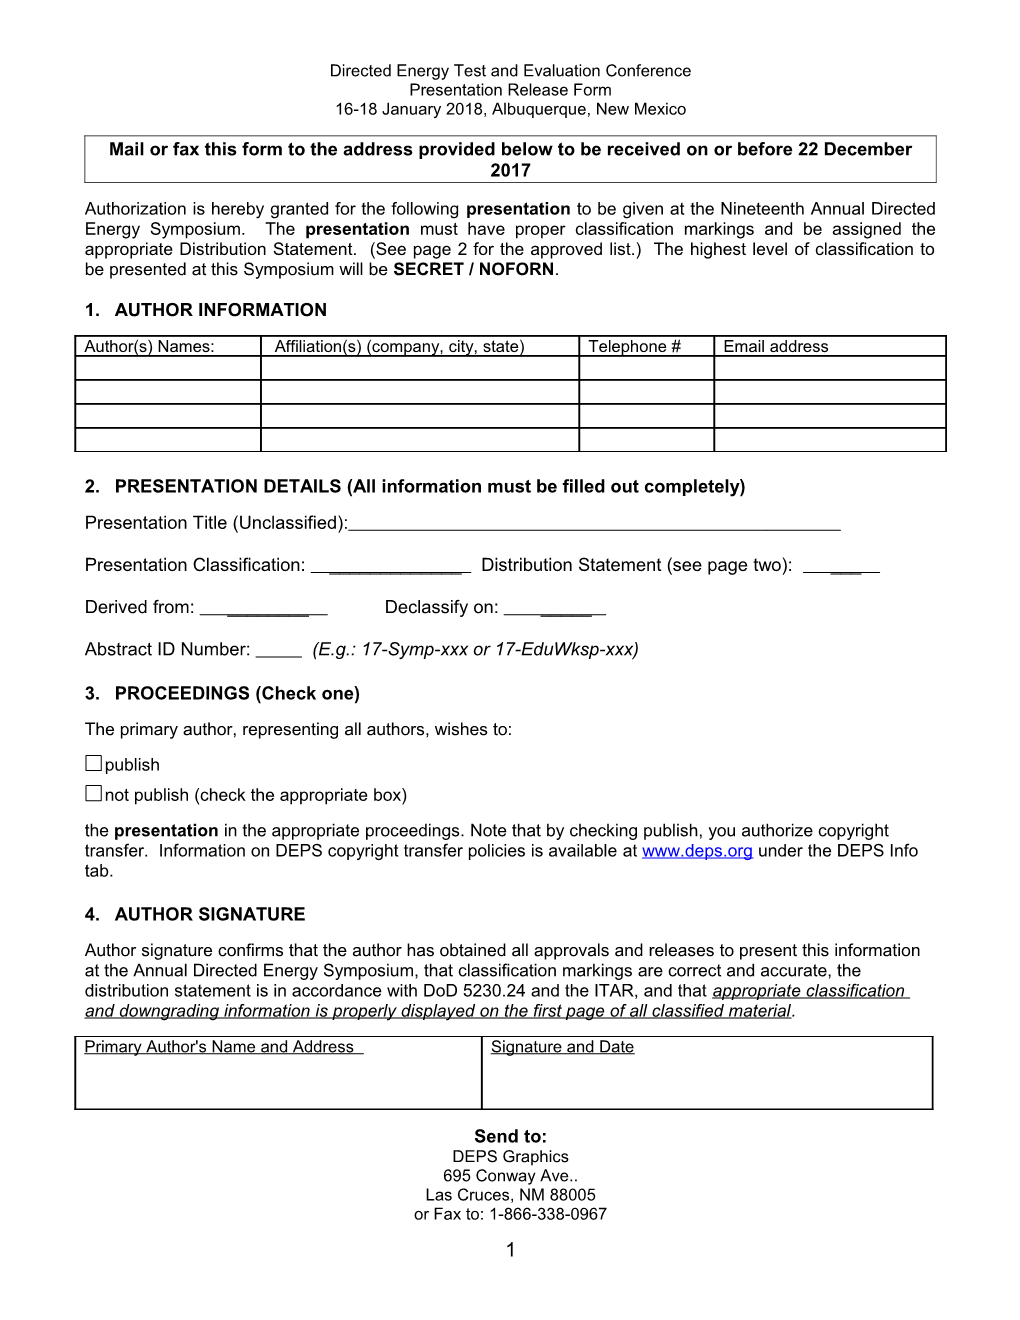 DEPS Paper Release Form